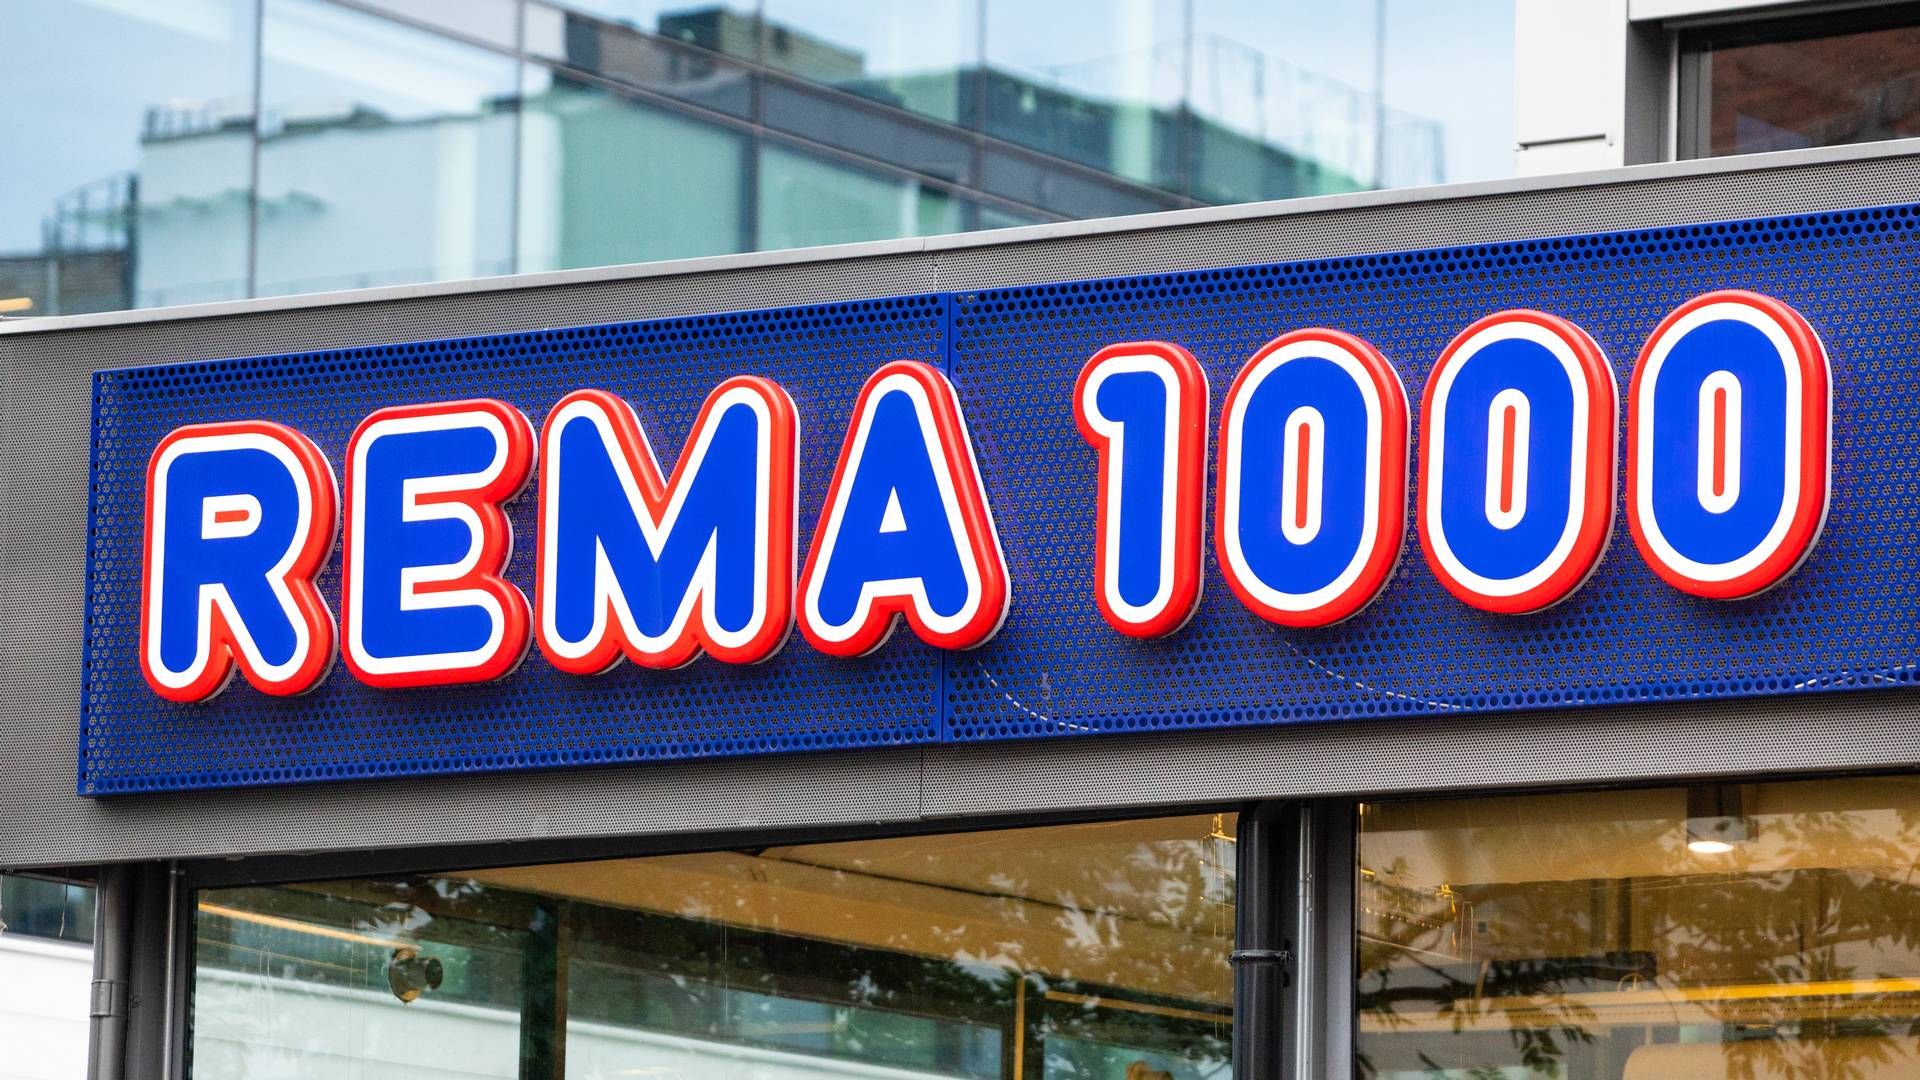 Totalt har Rema 1000 overtatt 113 tidligere Aldi-butikker, men Rema 1000 har siden solgt ti butikker videre til Lidl, fem til Dagrofa og tre til Coop. | Foto: Audun Braastad / NTB